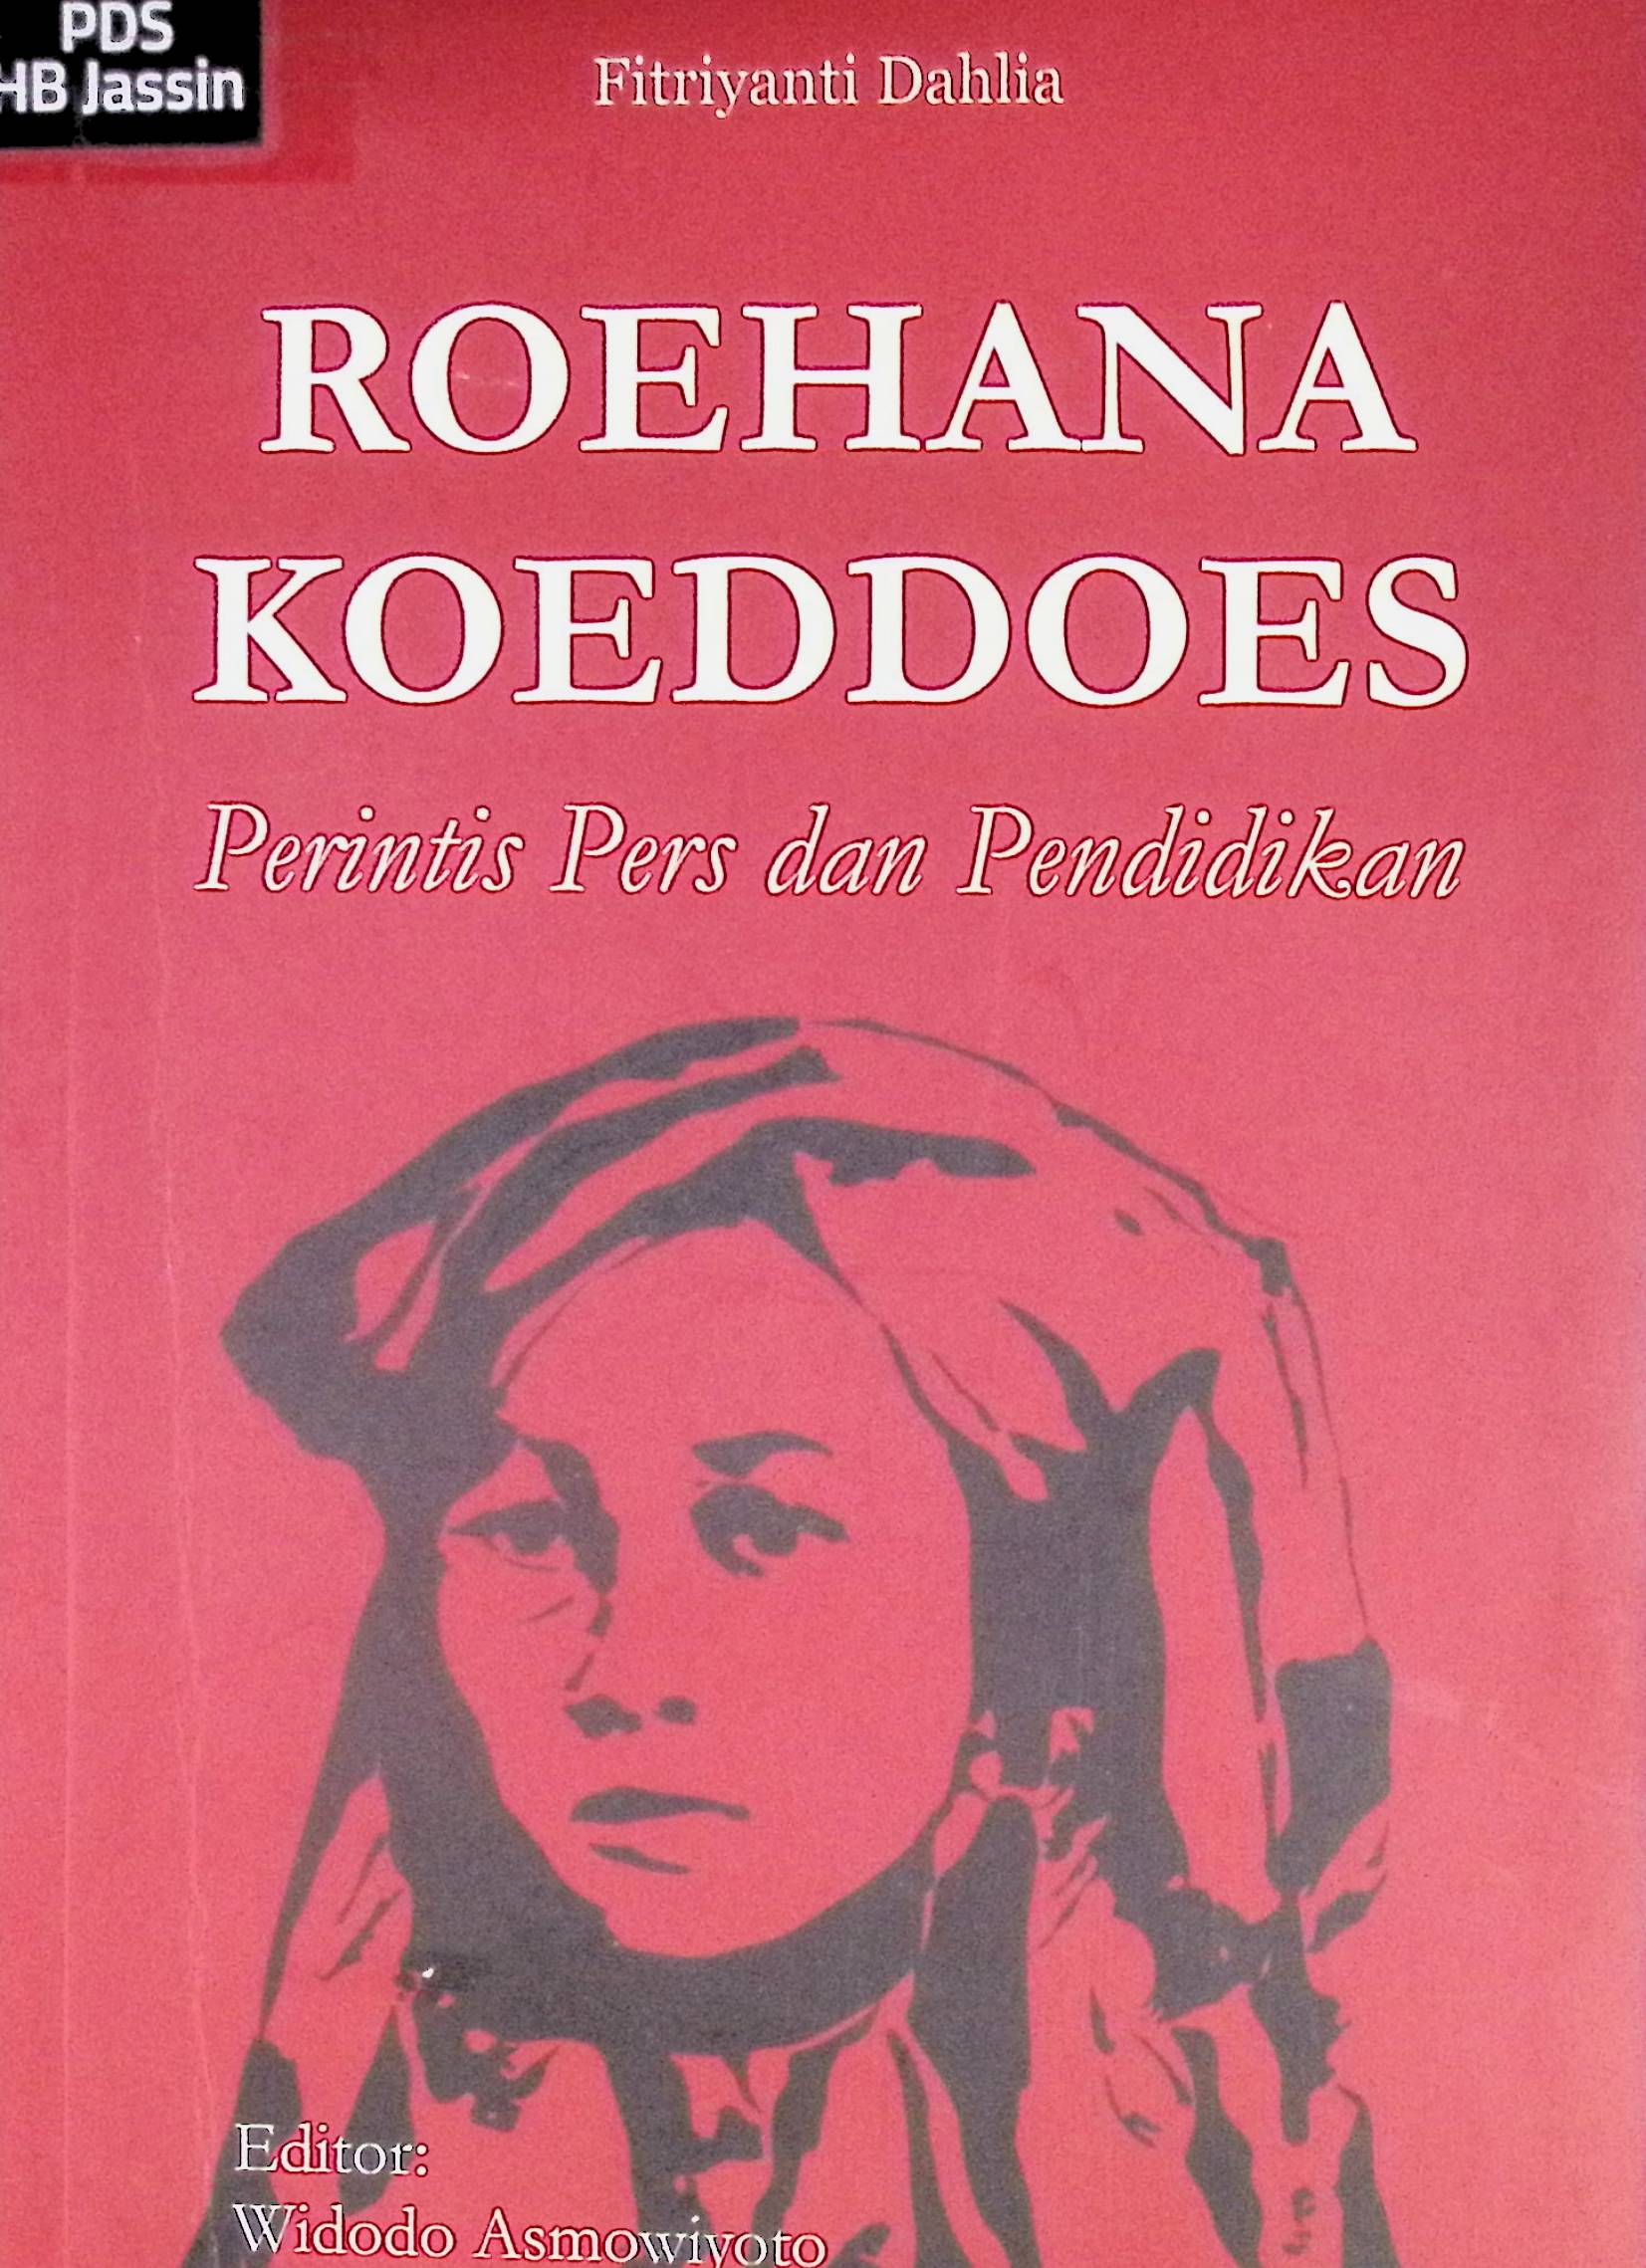 Roehana Koeddoes :  perintis pers dan pendidikan